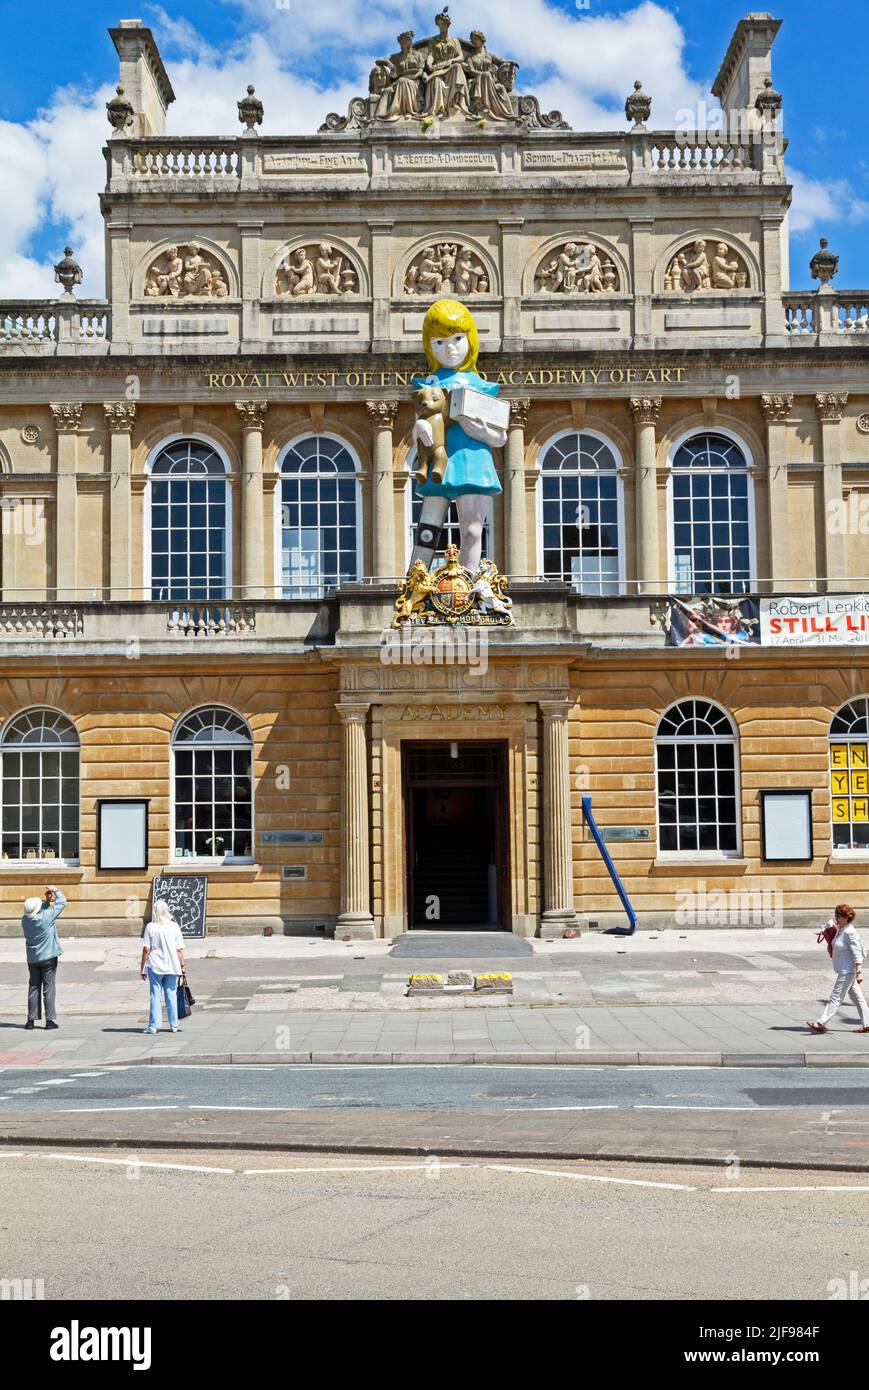 La escultura de Damien Hirst “Charity” en las afueras de la Royal West of England Academy en Bristol, Reino Unido, el 3 de junio de 2011 Foto de stock